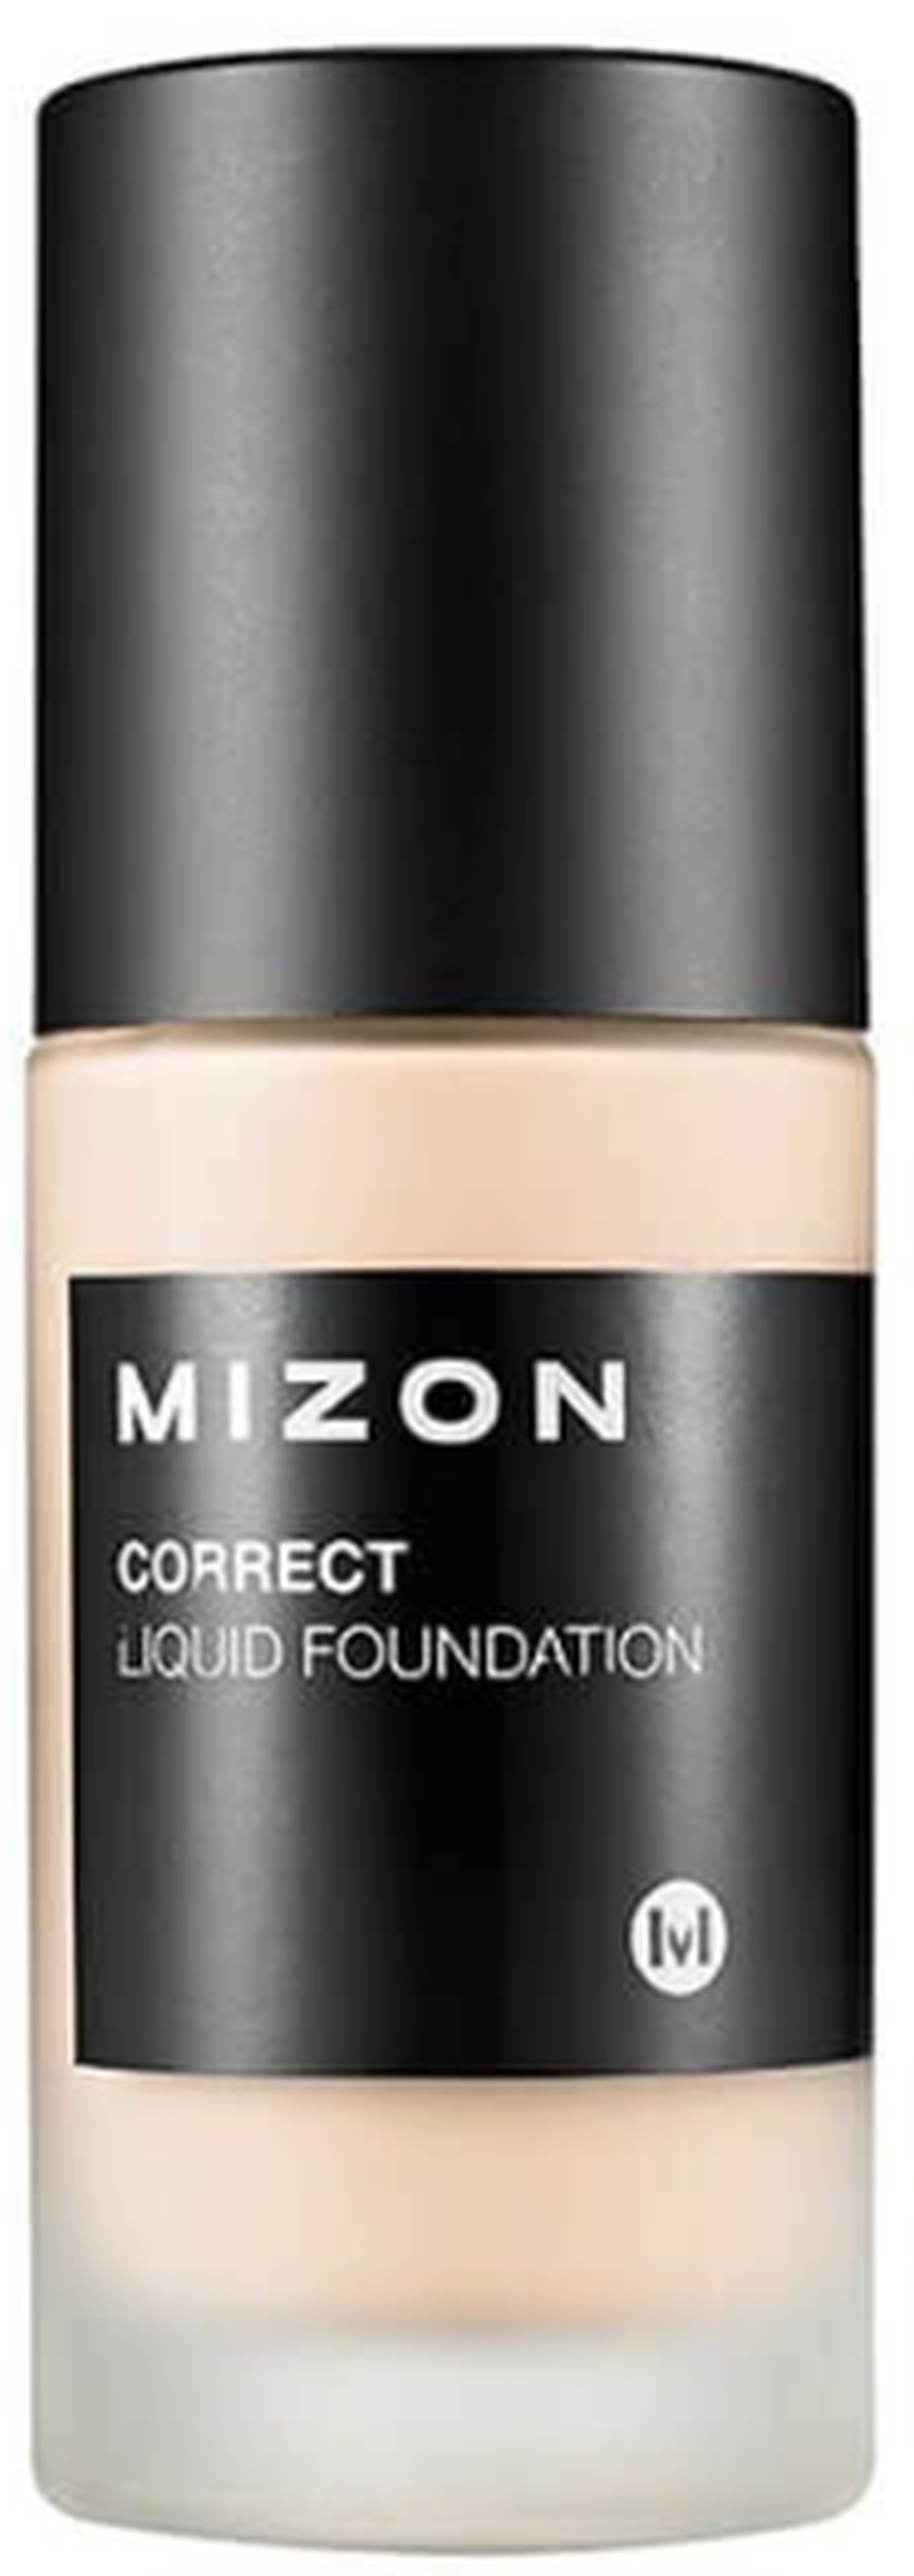 Mizon Увлажняющая тональная основа под макияж Correct Liquid Foundation SPF 25 PA++ #23 Natural Вeige фото